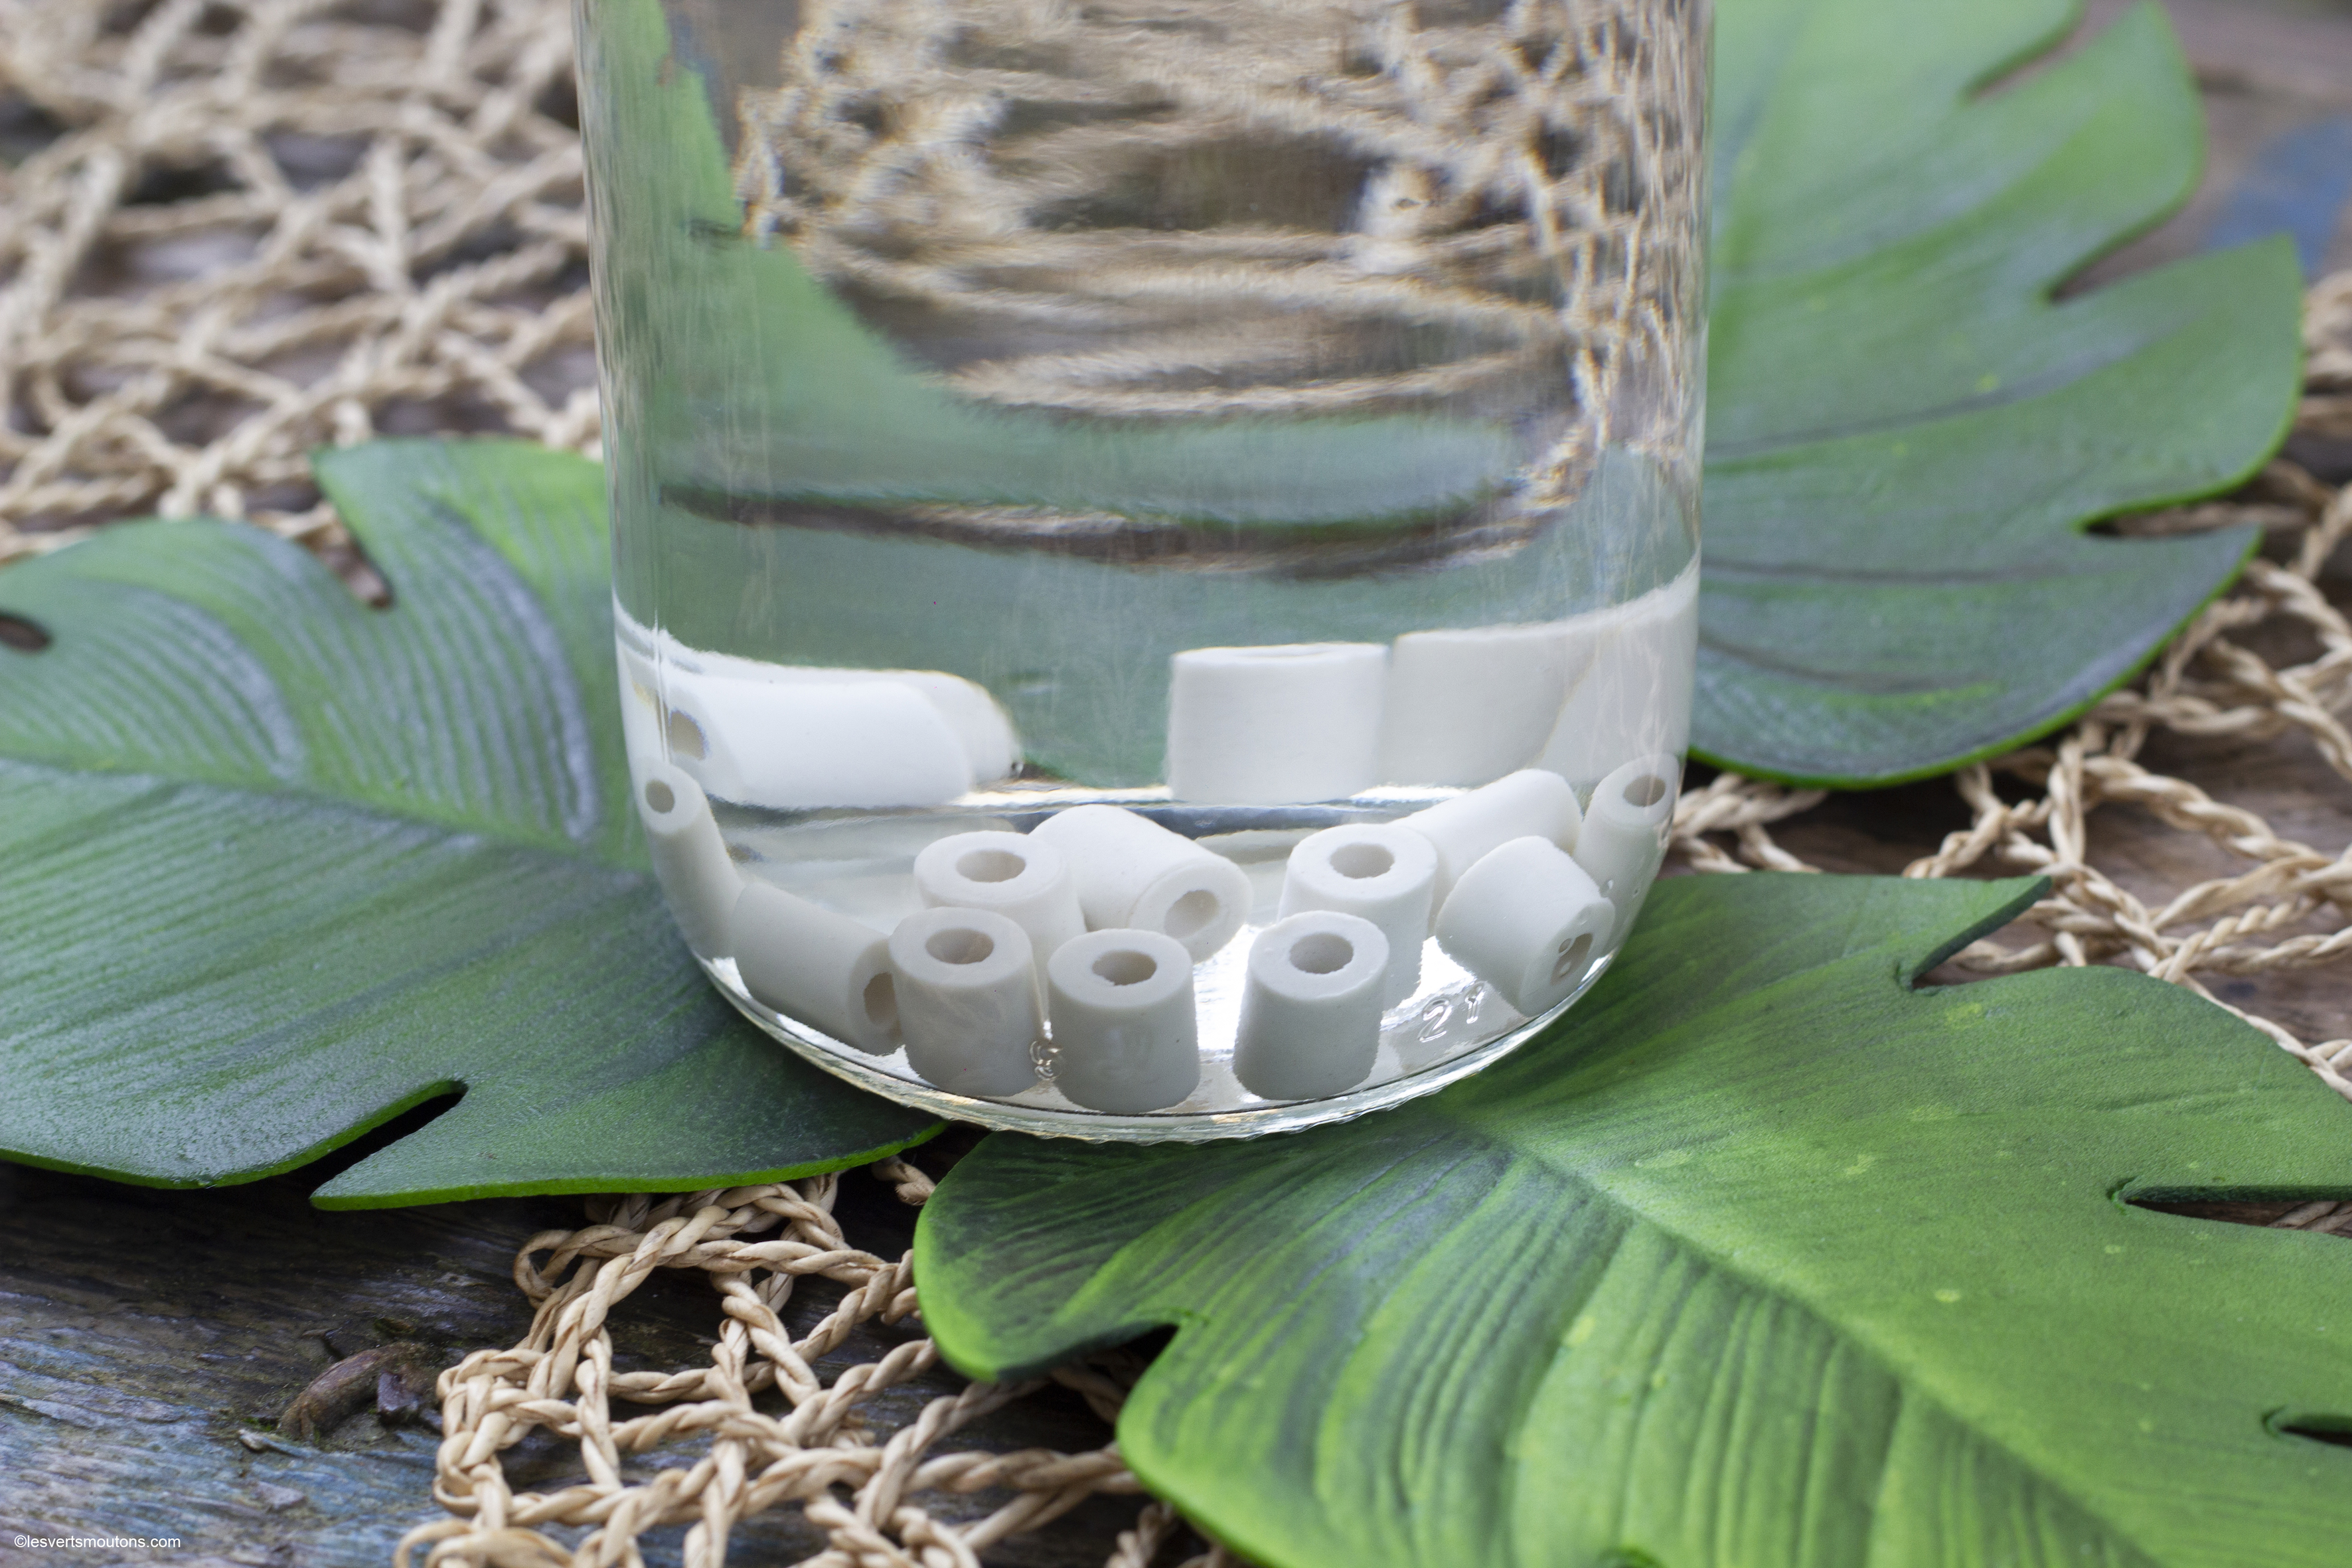 Les perles céramiques améliorent naturellement le goût de l'eau